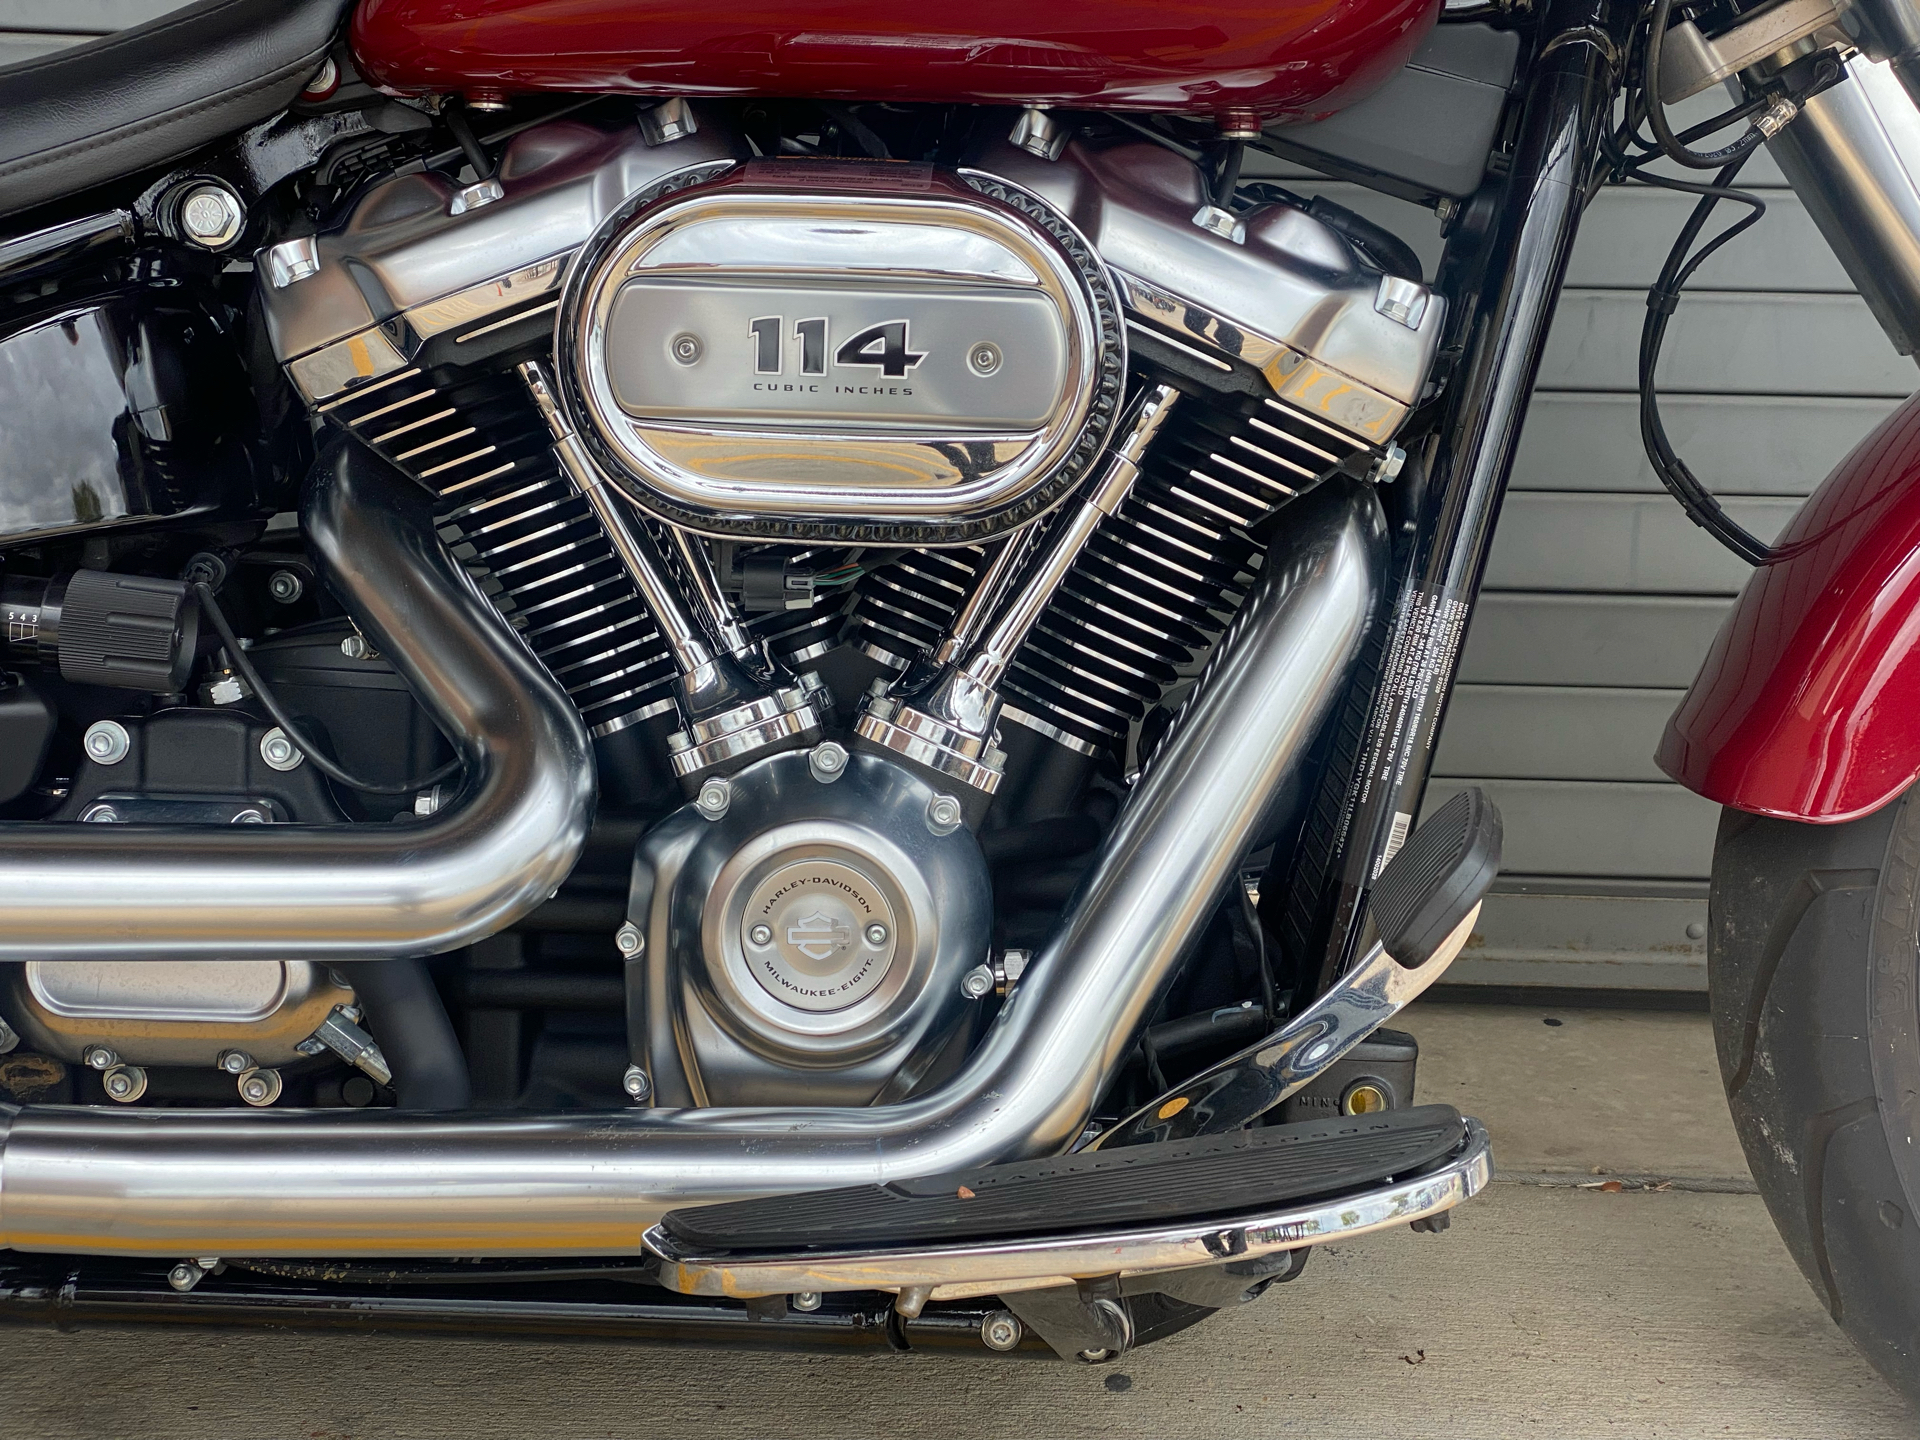 2020 Harley-Davidson Fat Boy® 114 in Carrollton, Texas - Photo 7